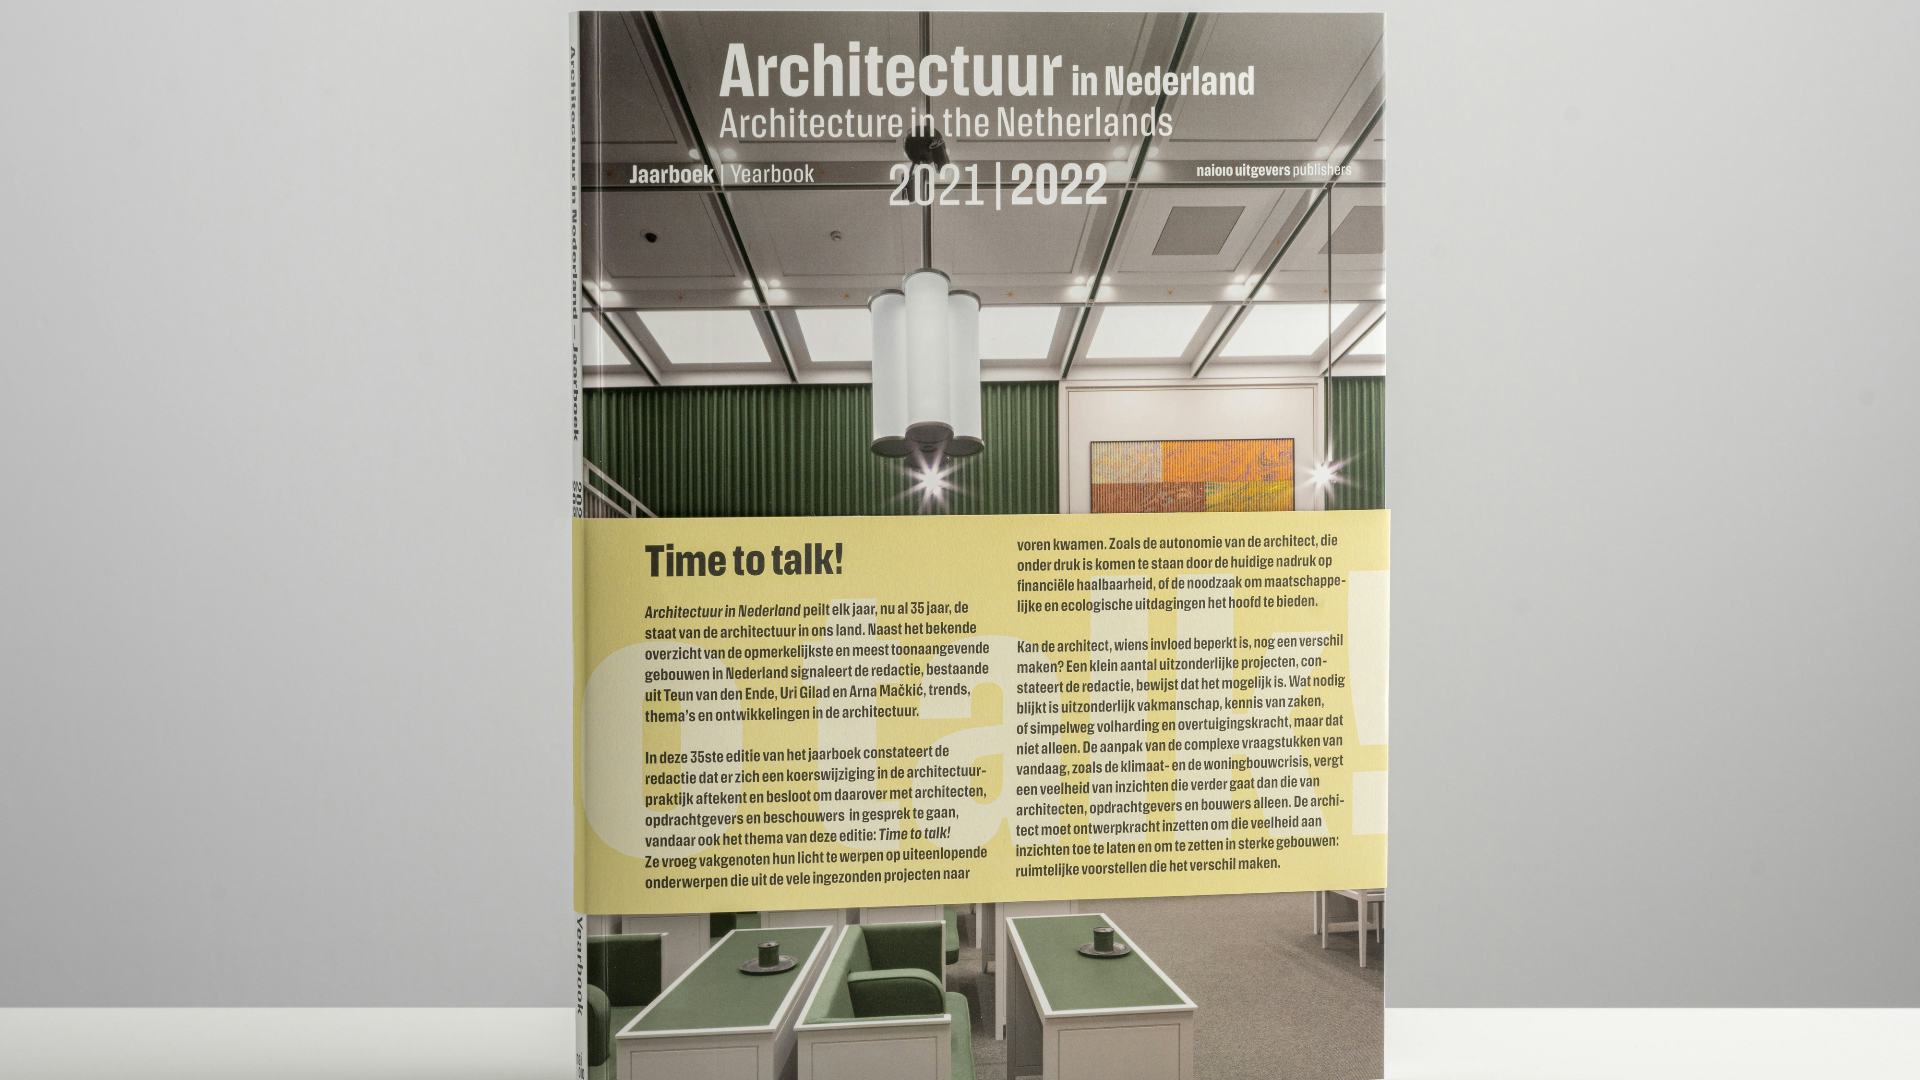 Het Jaarboek Architectuur kondigt met de cover nieuwe tijden aan